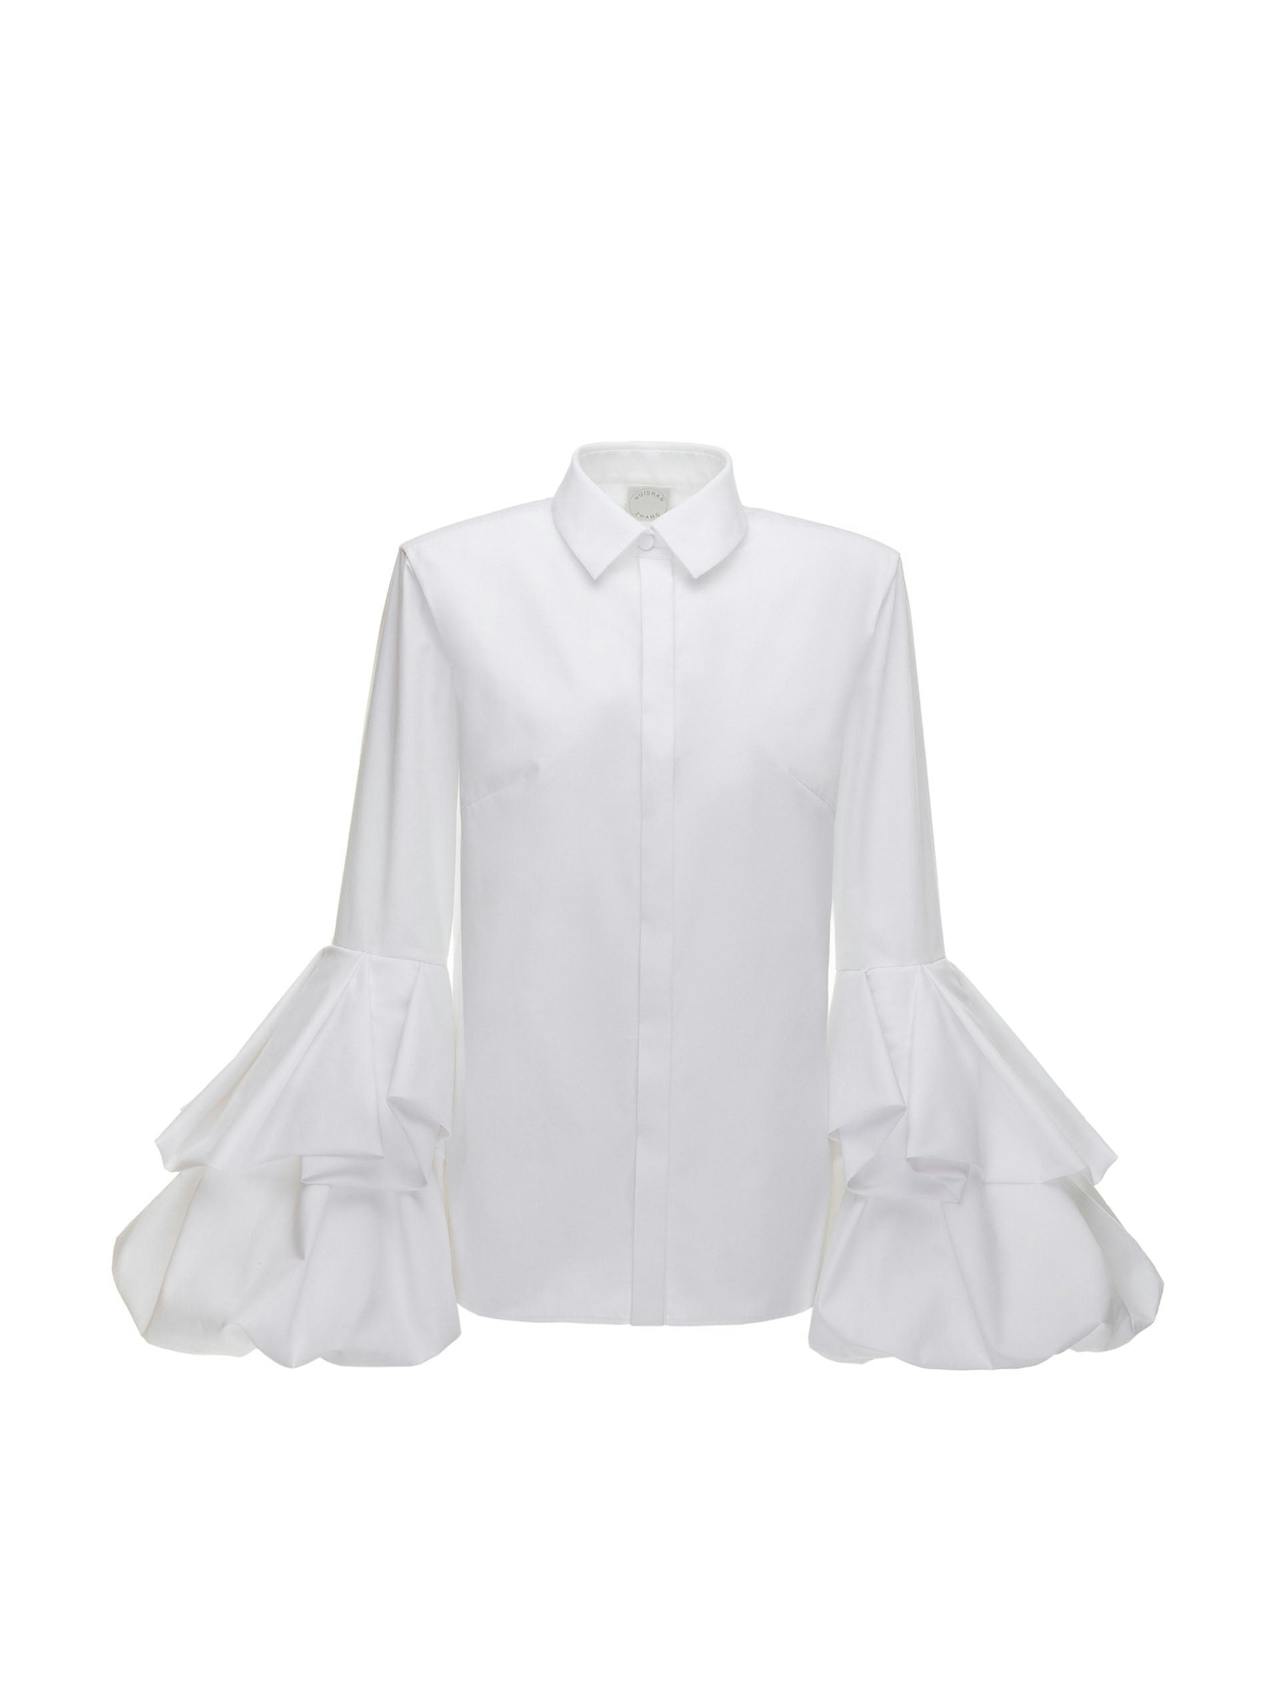 White cotton Sharon shirt